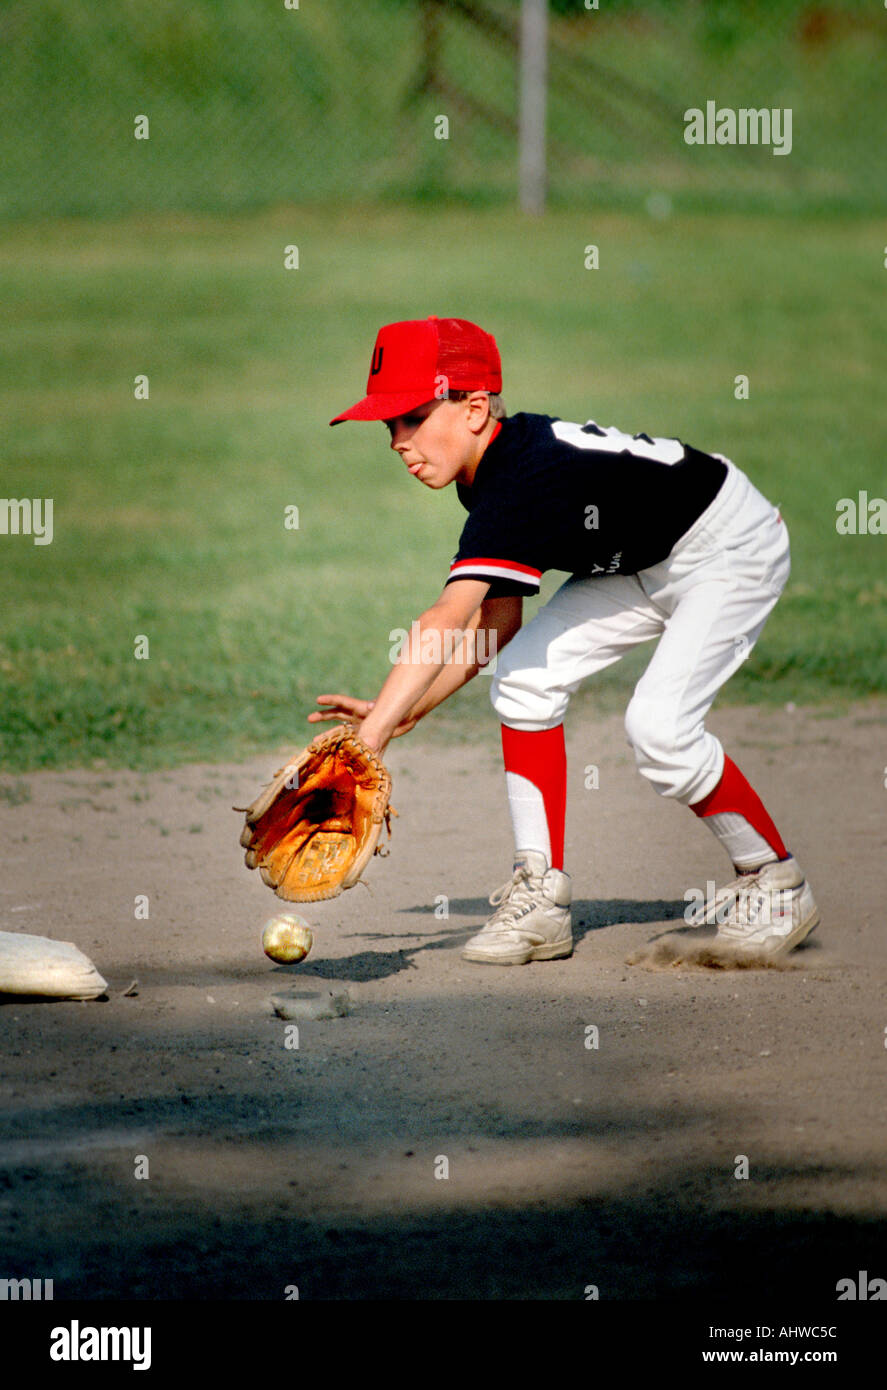 Little League Baseball-Spieler soll den Ball zu fangen, während des Spiels dritten base Stockfoto